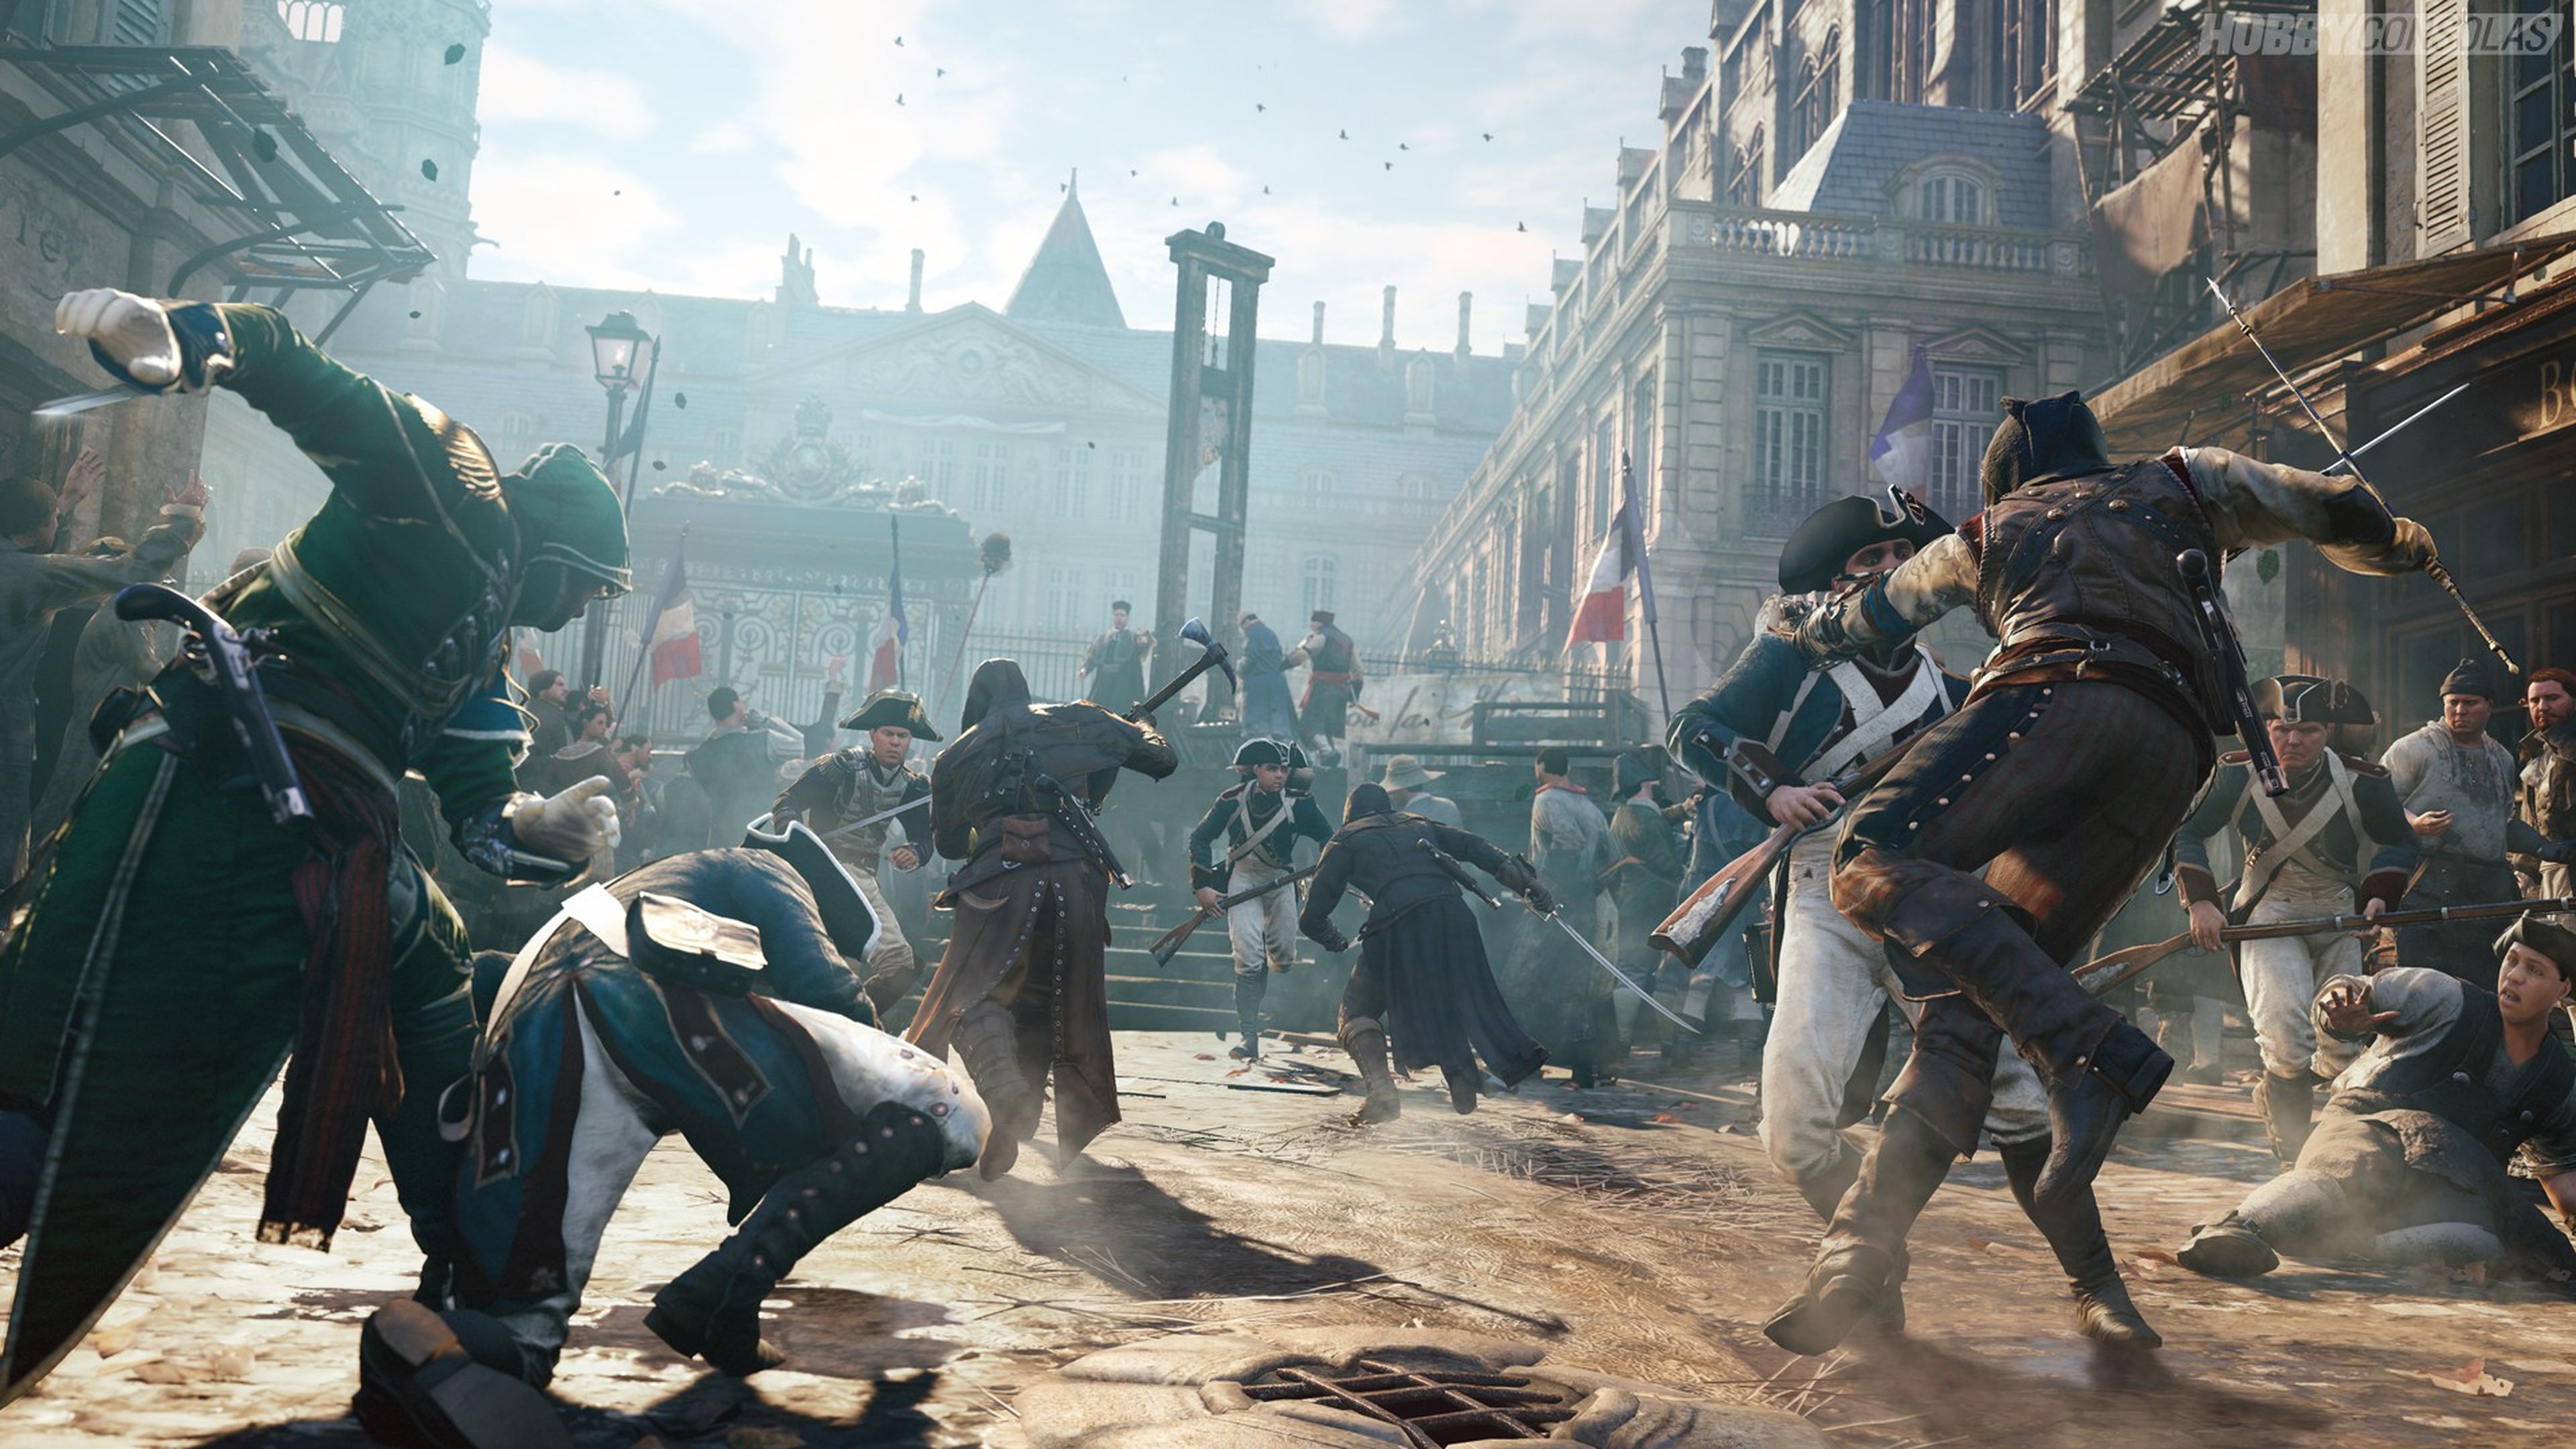 El tamaño de París y sus monumentos en Assassin's Creed Unity